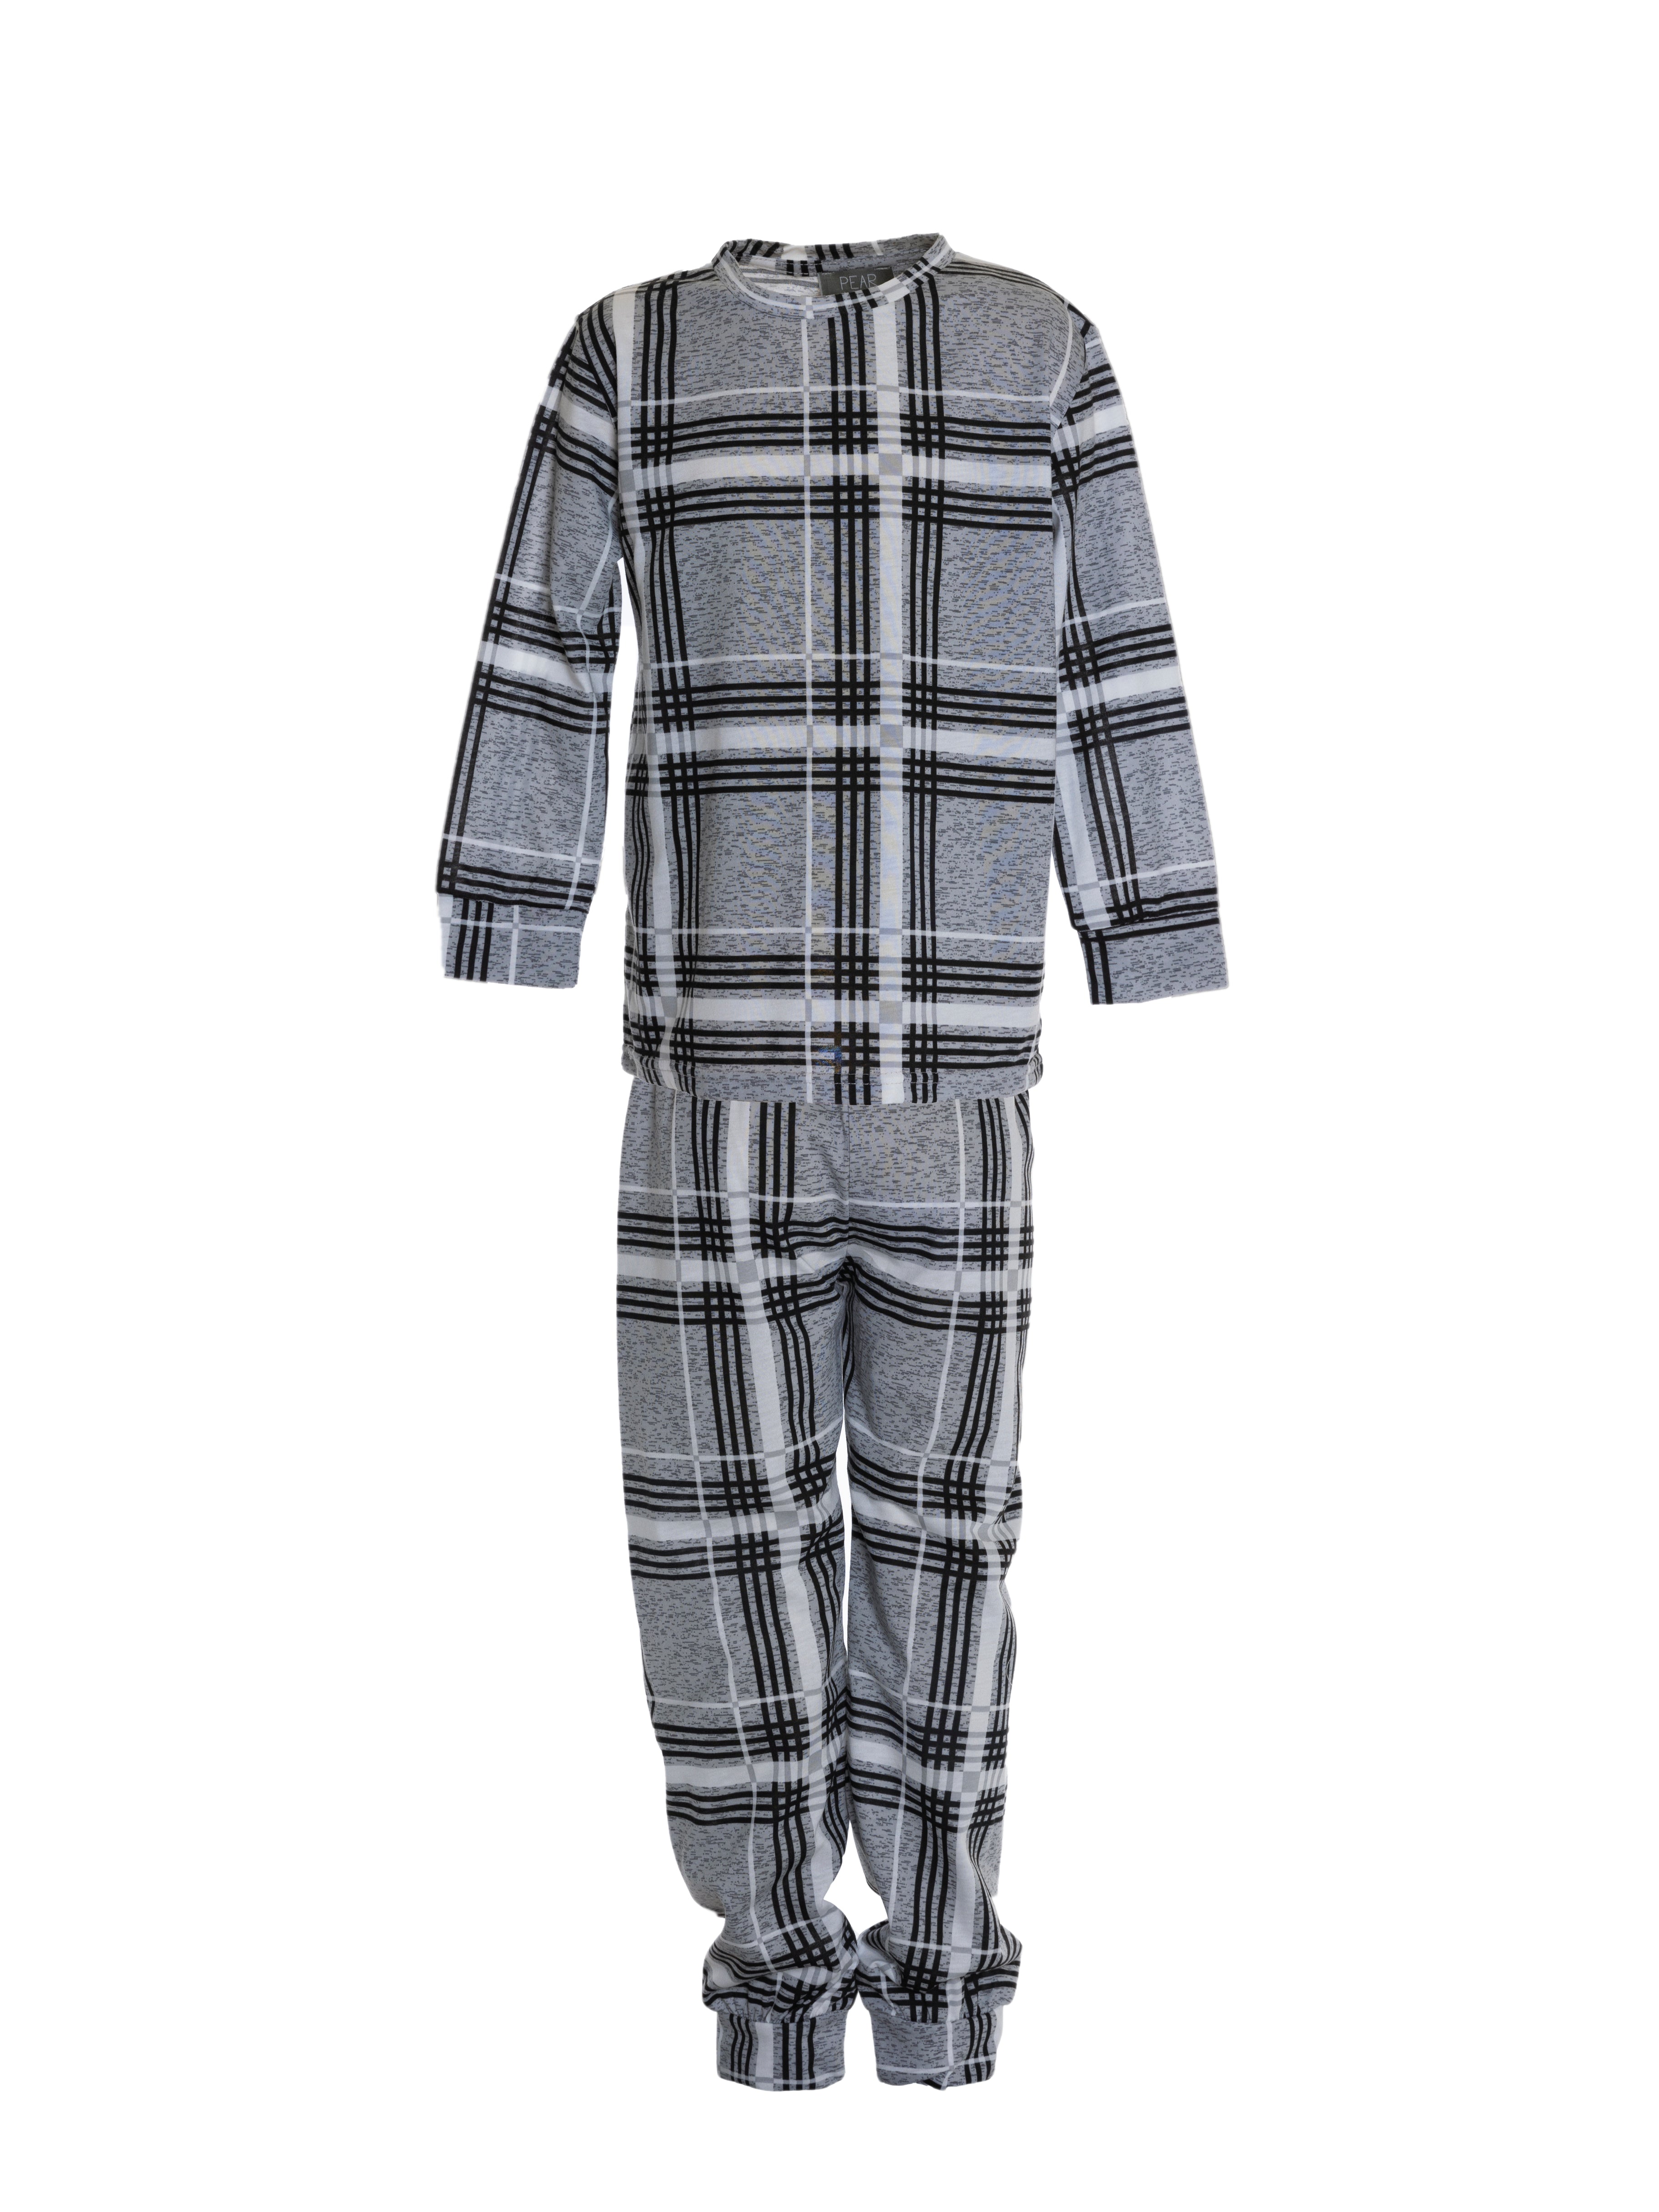 Carreau Pyjama Set For Boys - Grey - Pear